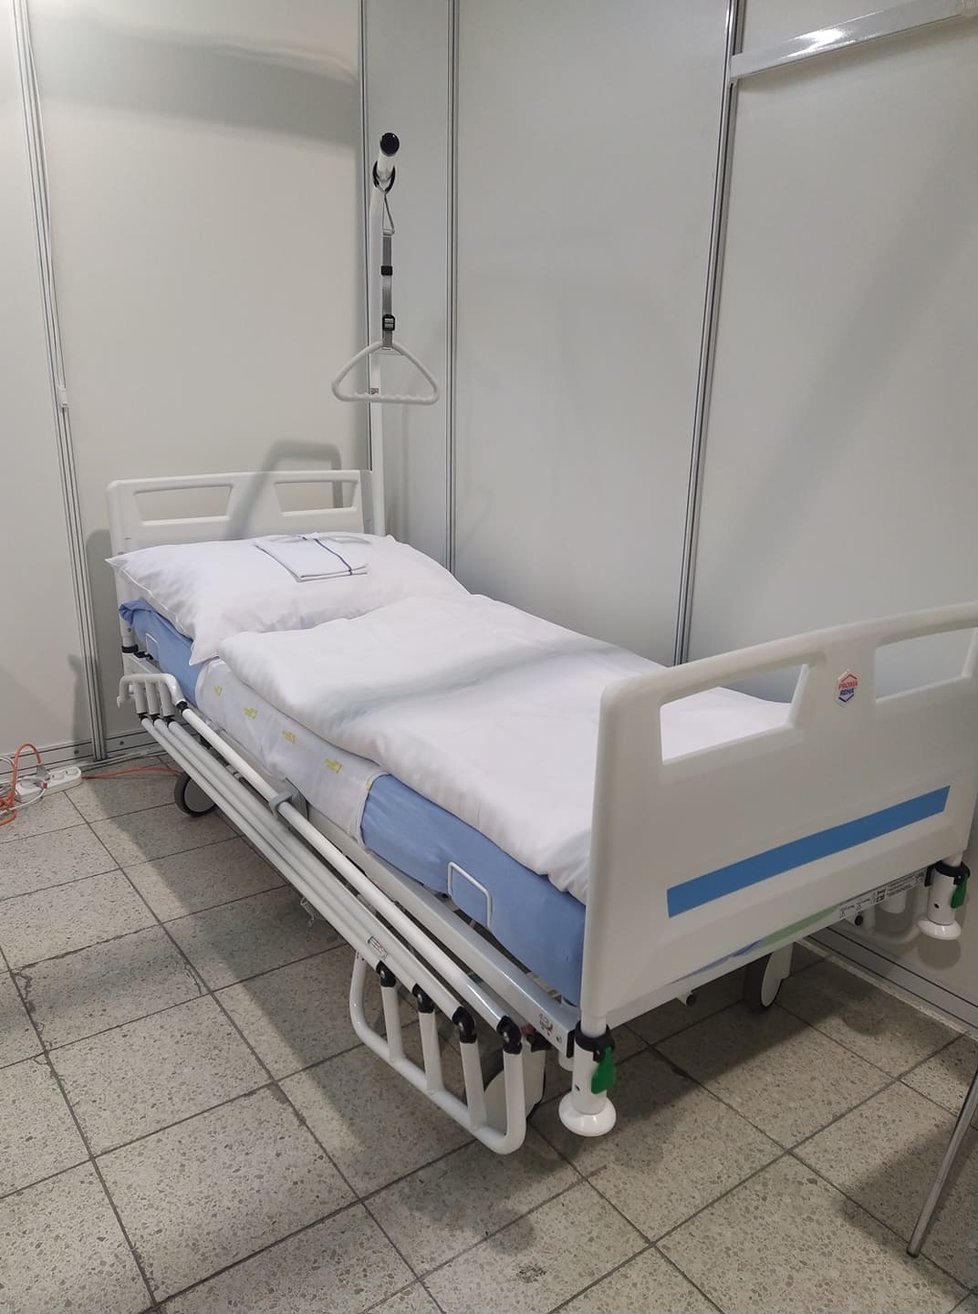 V Brně na výstavišti otevřeli záložní nemocnici s pacienty s covid-19. K dispozici je 302 lůžek.